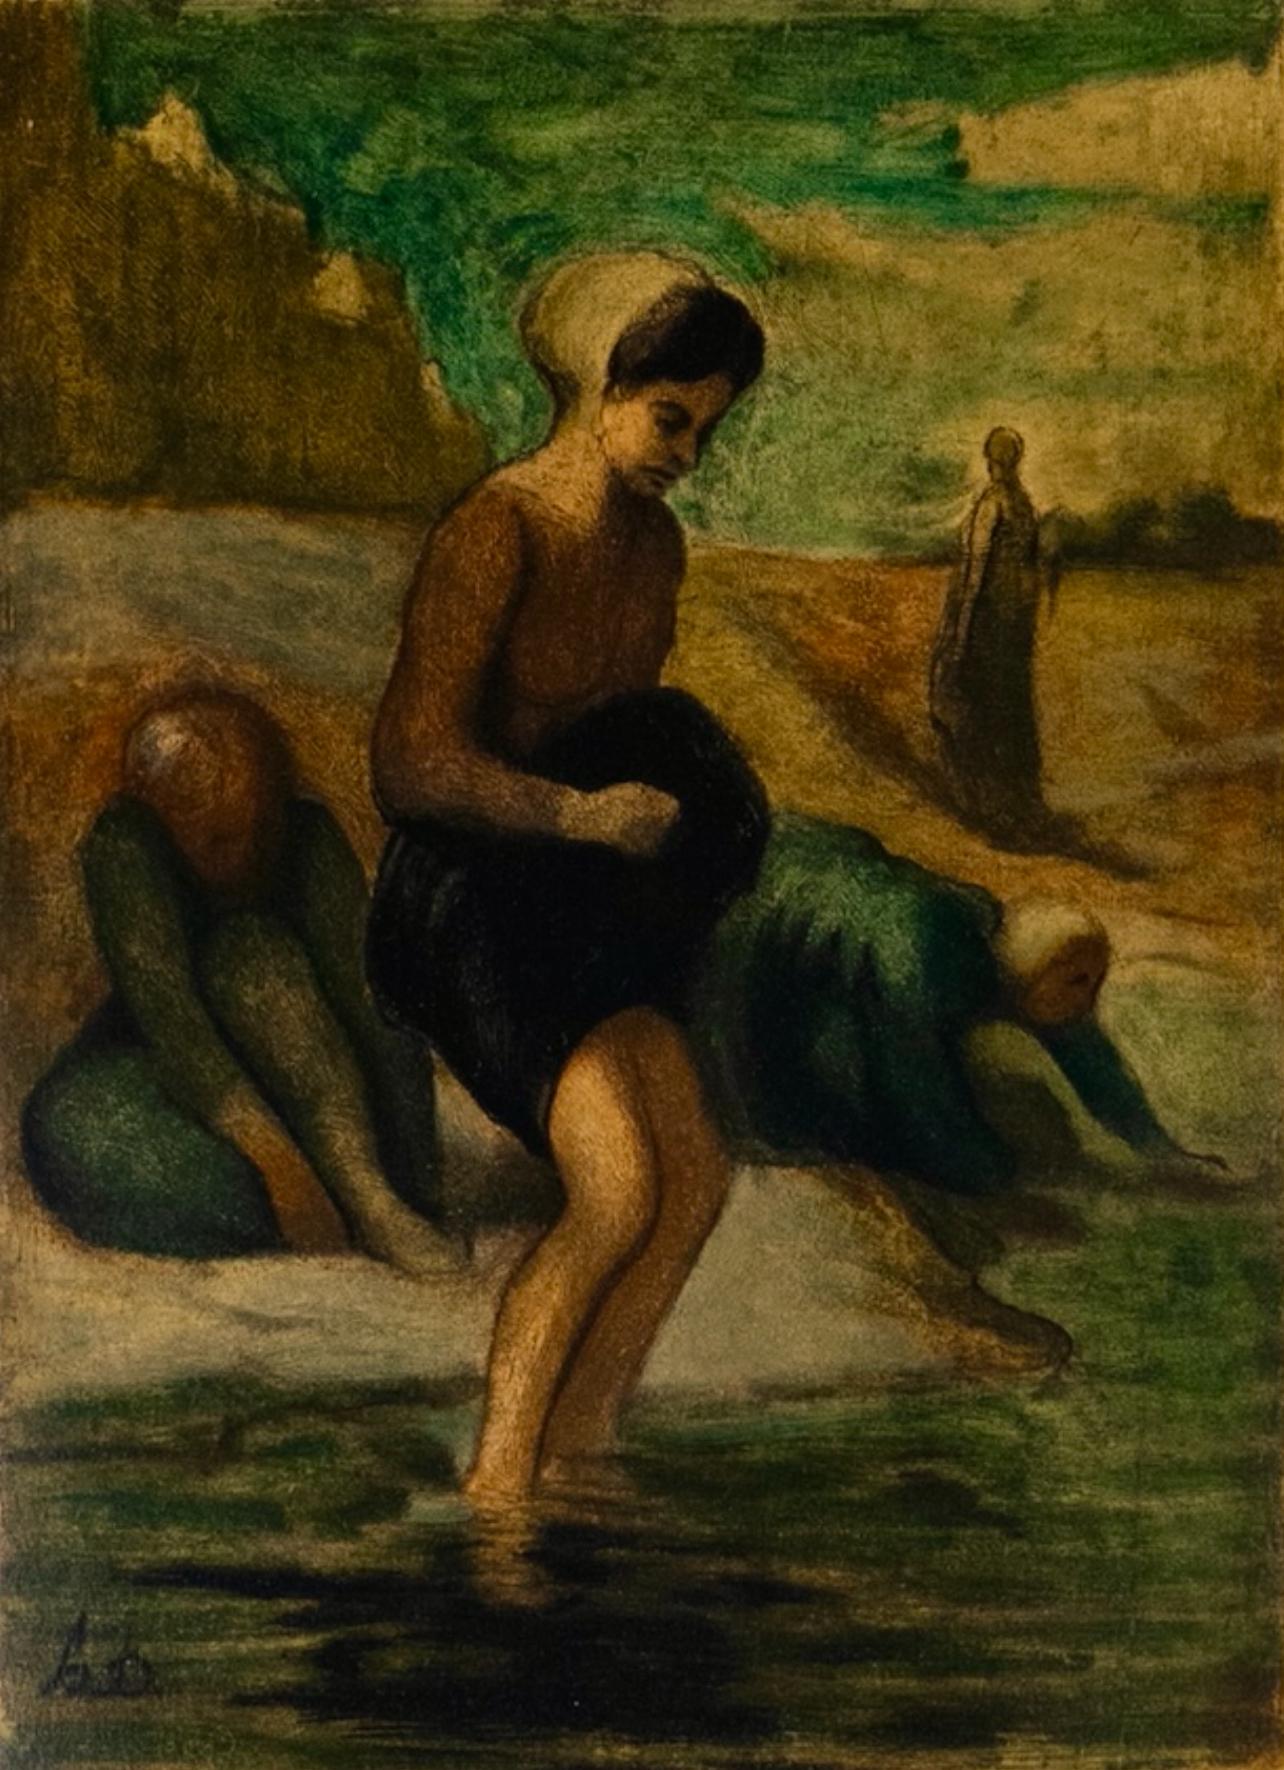 Daumier, Au bord de l'eau, Les Réalistes Lyriques (d'après)